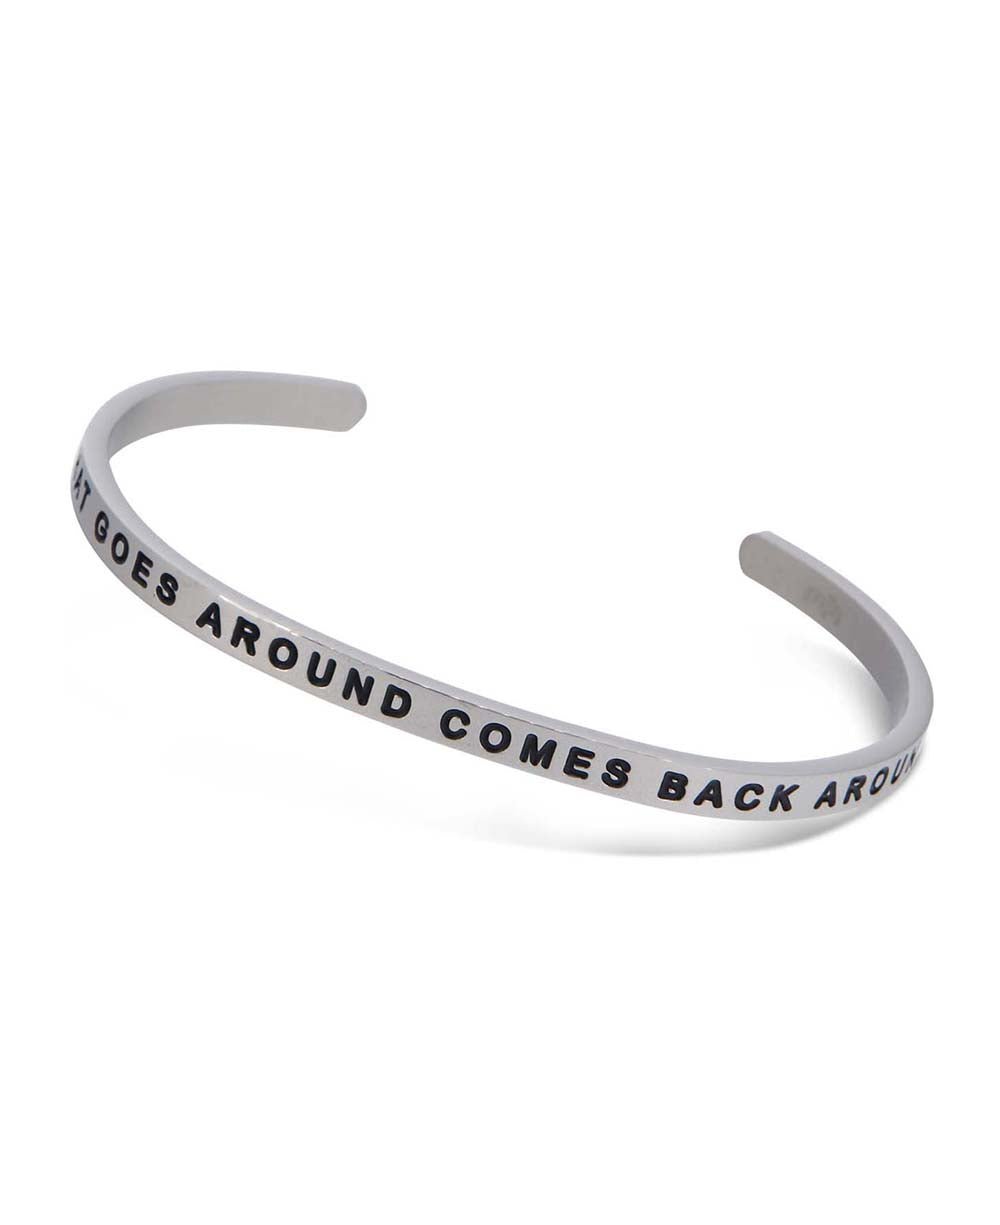 What Goes Around Comes Around, Karma Cuff Bracelet - Bracelets